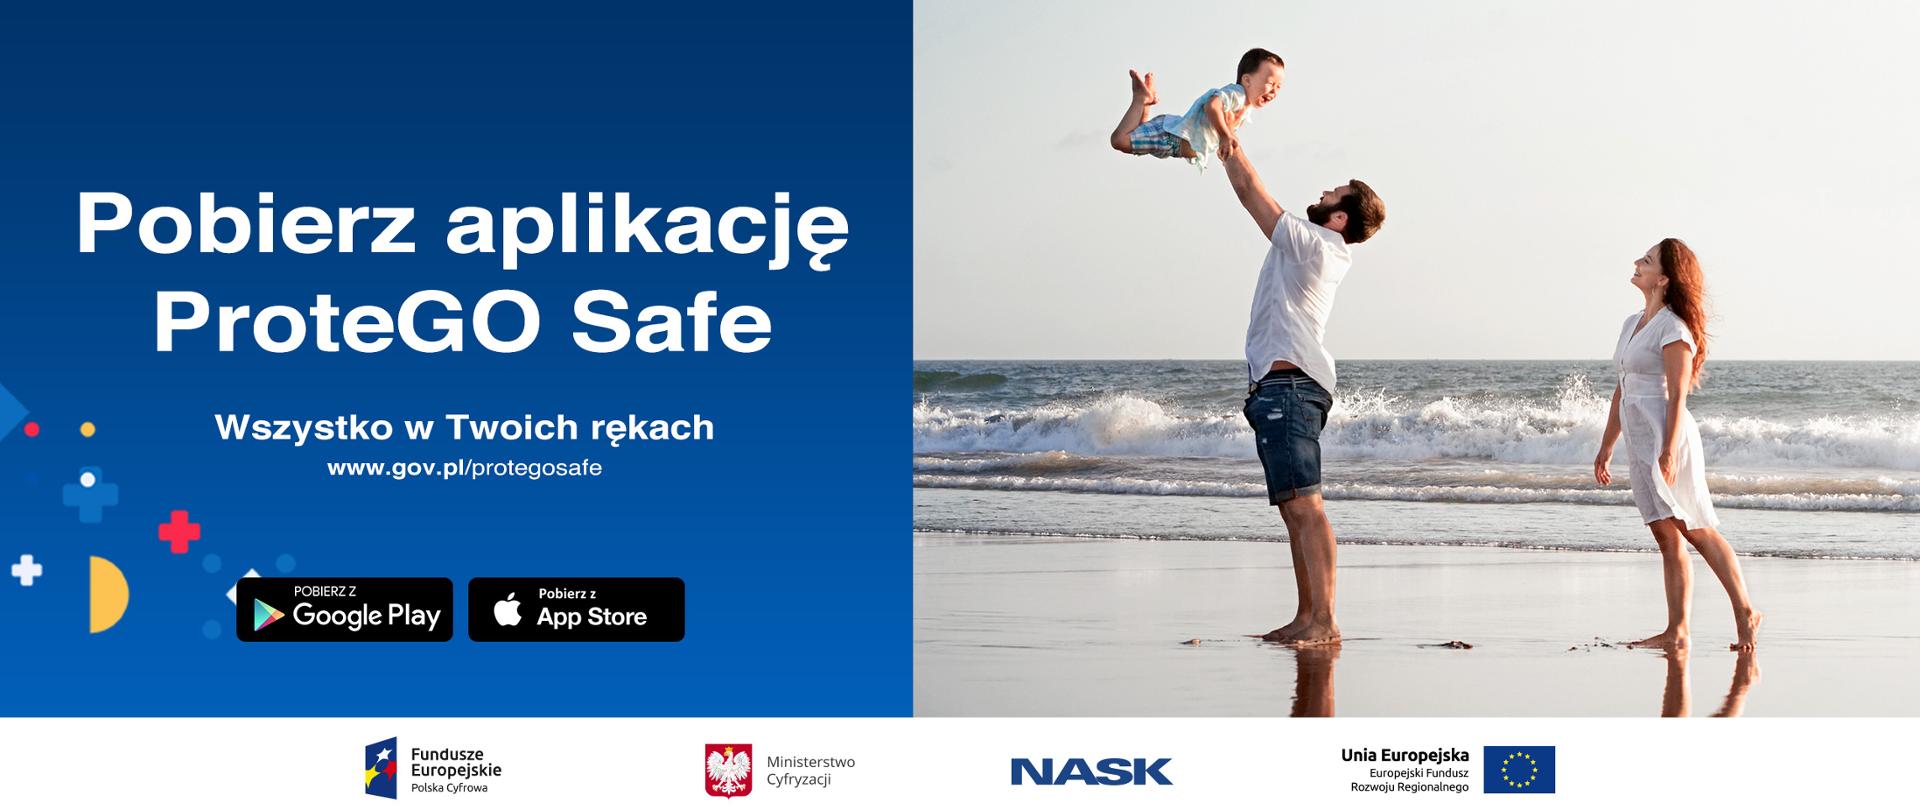 Po lewej stronie na niebieskim tle napis: "Pobierz aplikację protego safe - wszystko w twoich rękach". Po prawej stronie mężczyzna podrzucający do góry dziecko oraz kobieta - znajdują się na plaży.